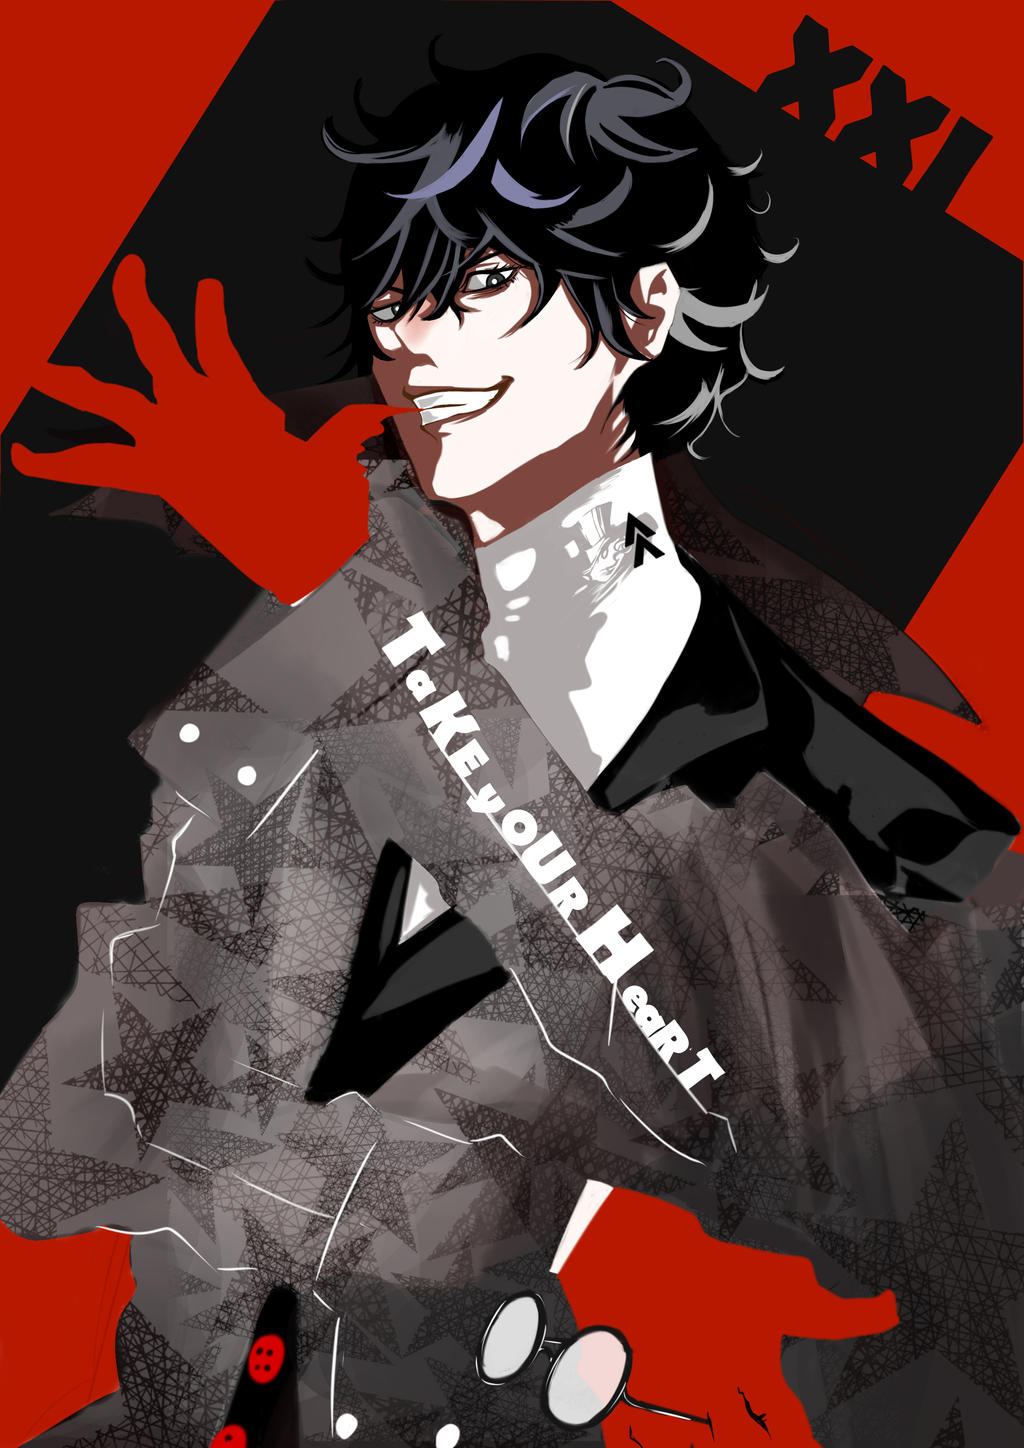 Persona 5 Joker by Gaijin1694 on DeviantArt